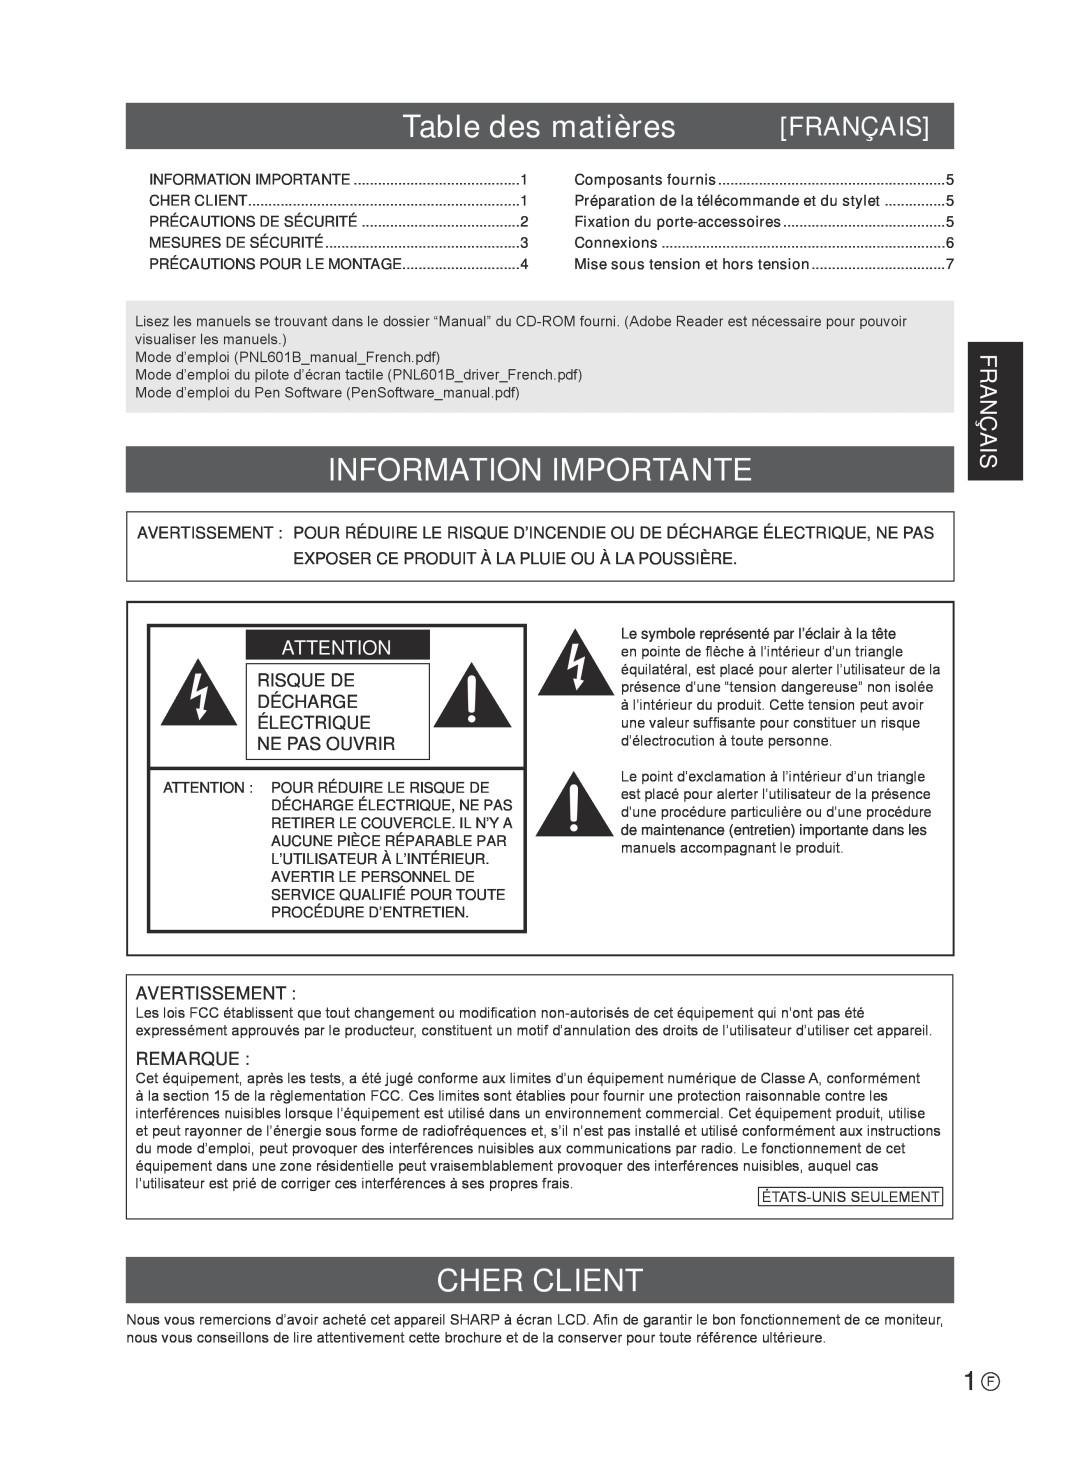 Sharp TINSE1181MPZZ(2) Table des matières, Information Importante, Cher Client, Français, Avertissement, Remarque 